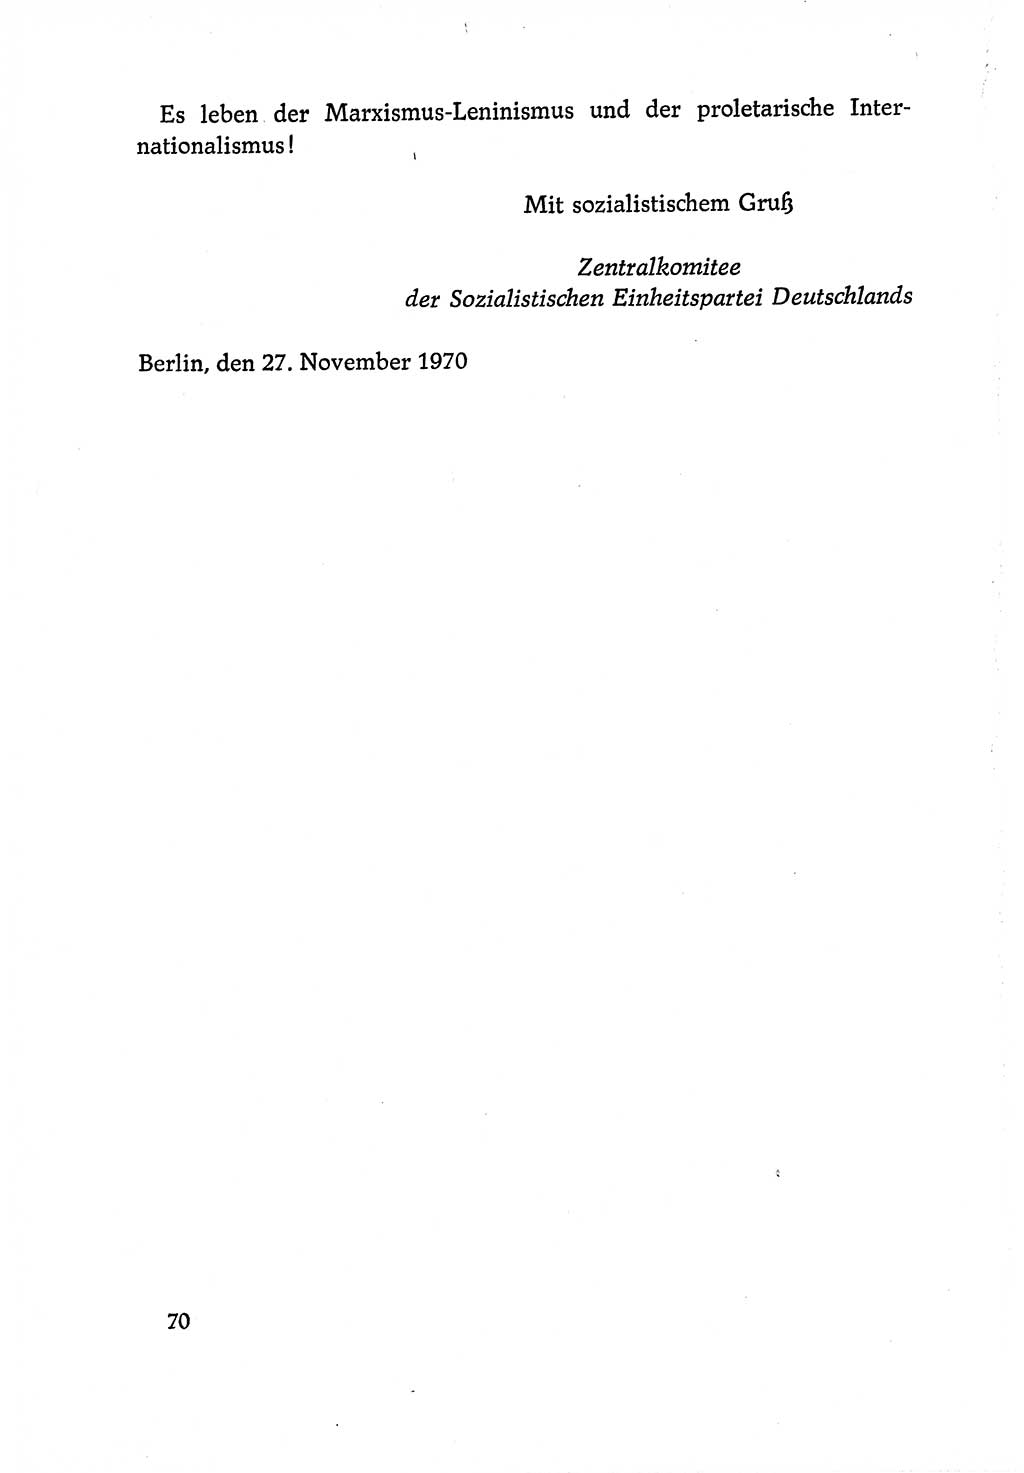 Dokumente der Sozialistischen Einheitspartei Deutschlands (SED) [Deutsche Demokratische Republik (DDR)] 1970-1971, Seite 70 (Dok. SED DDR 1970-1971, S. 70)